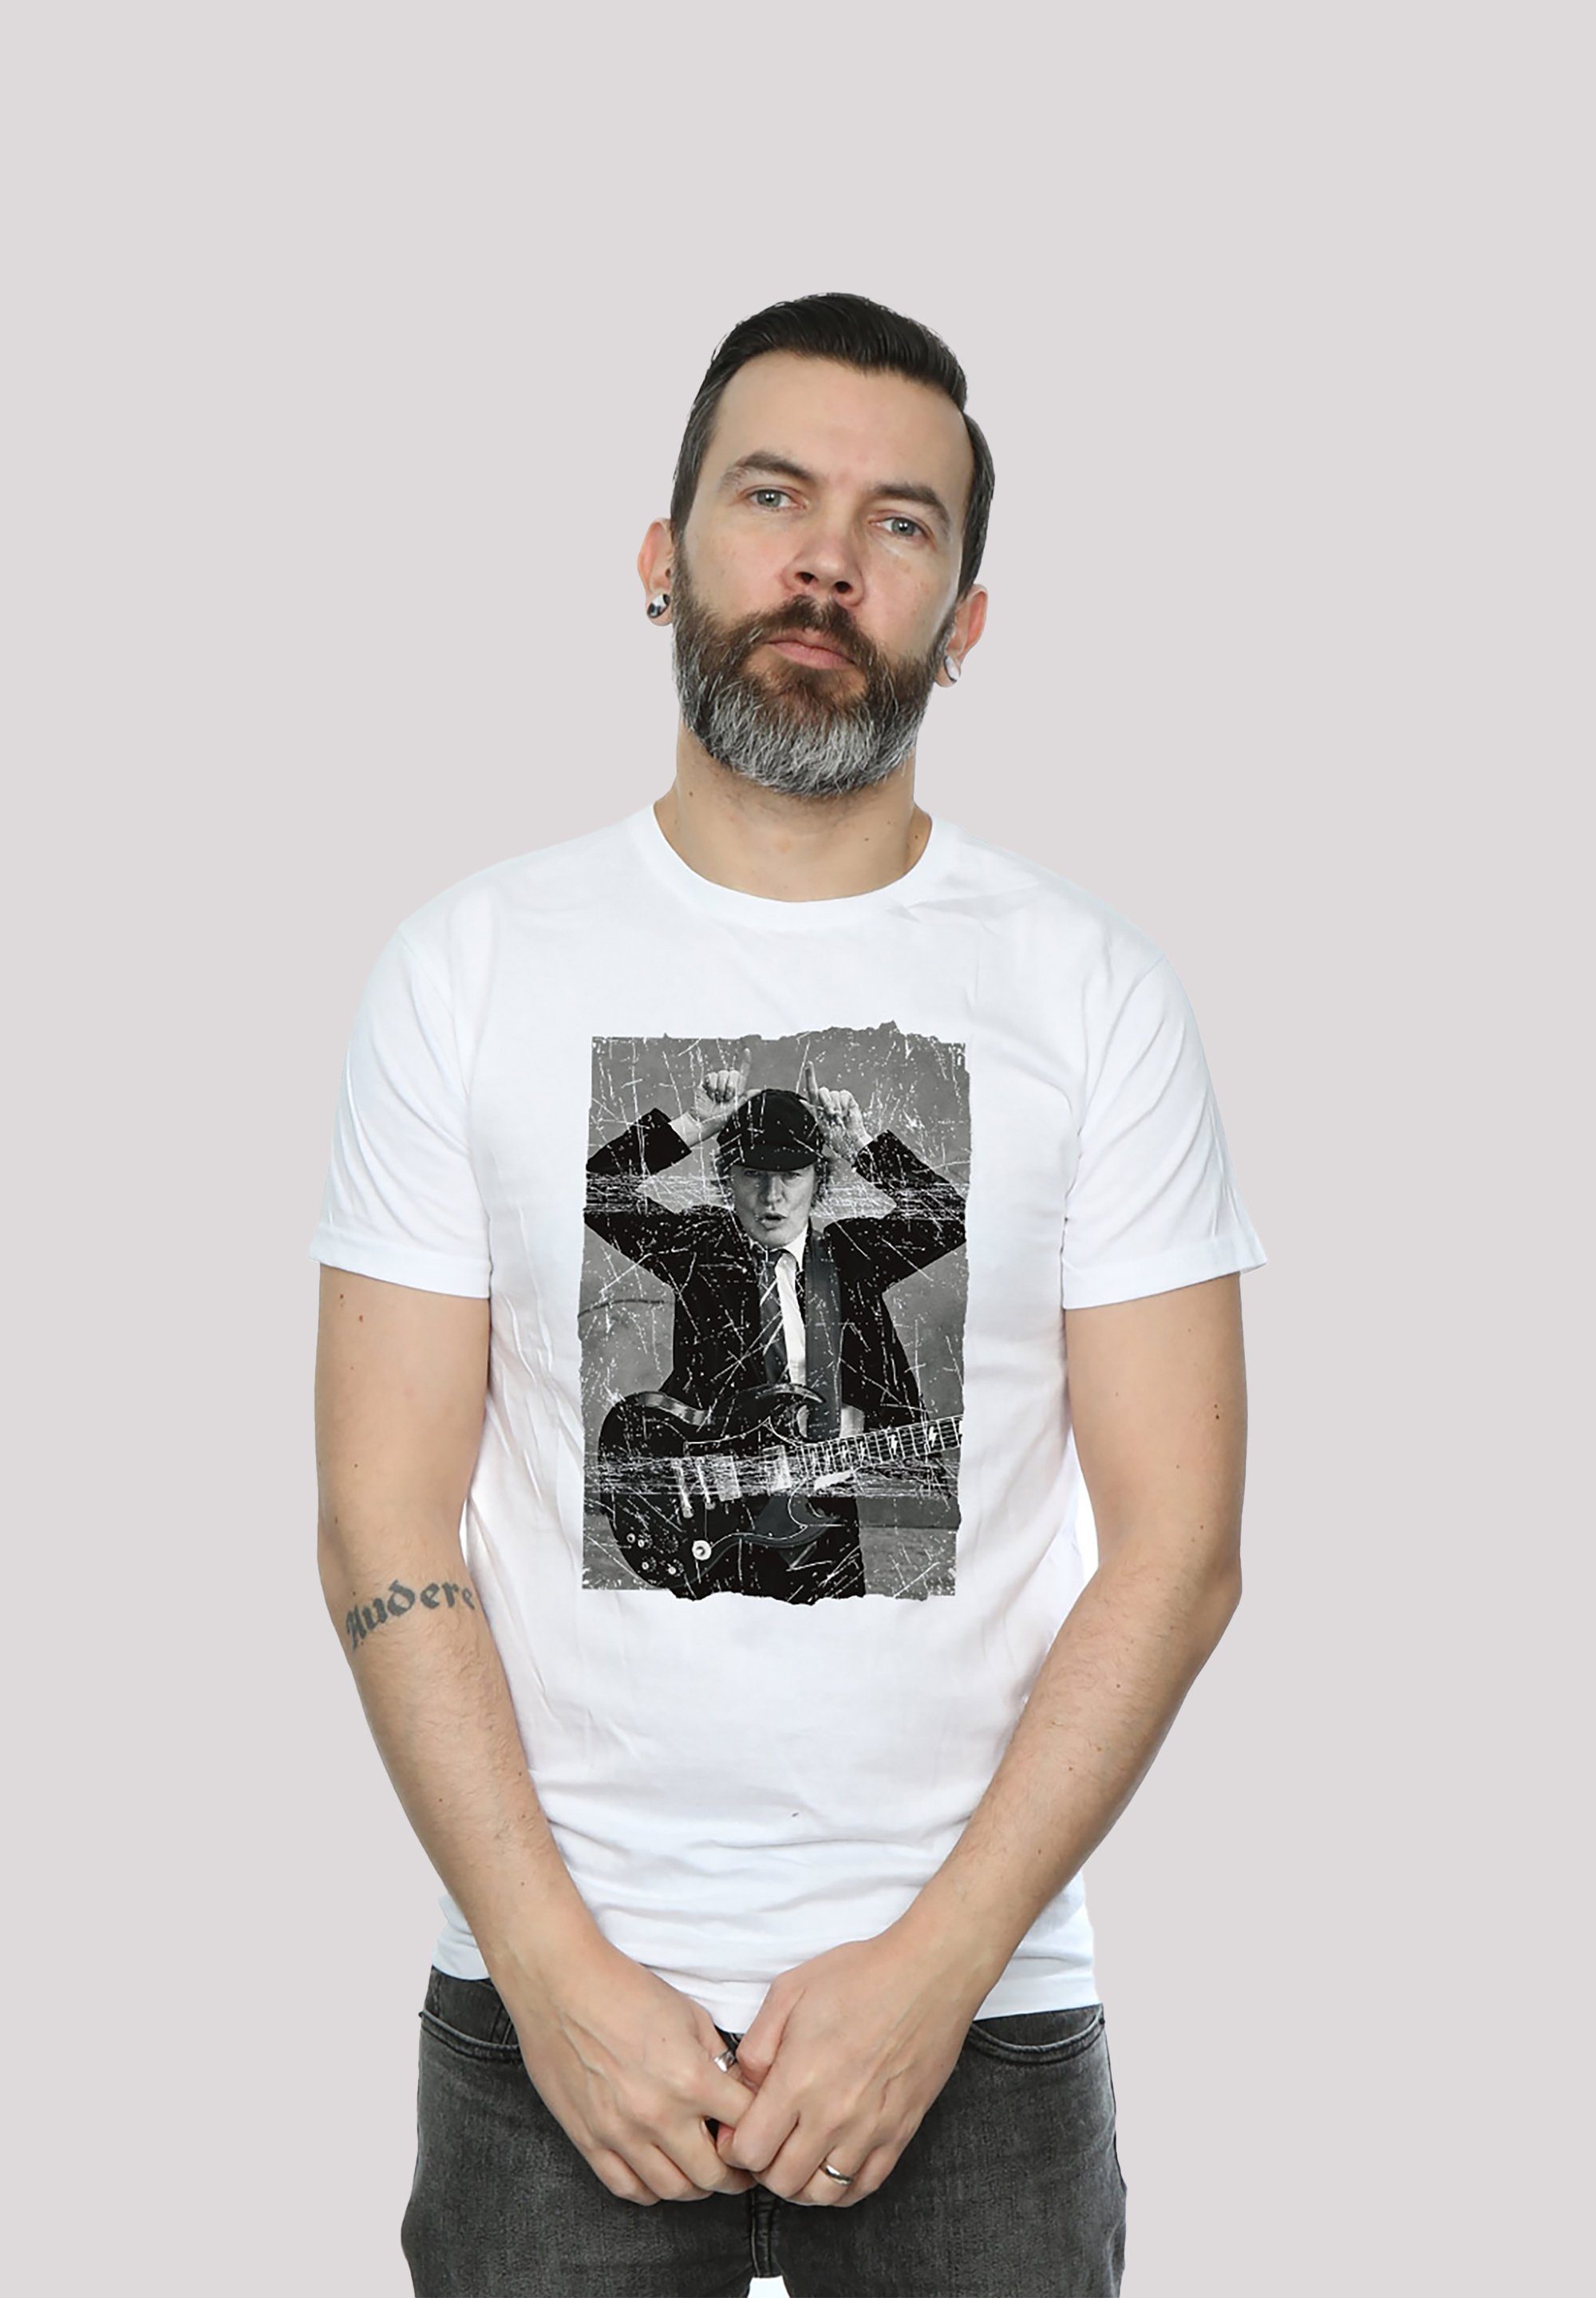 F4NT4STIC T-Shirt ACDC Angus Young Foto für Kinder & Herren Print weiß